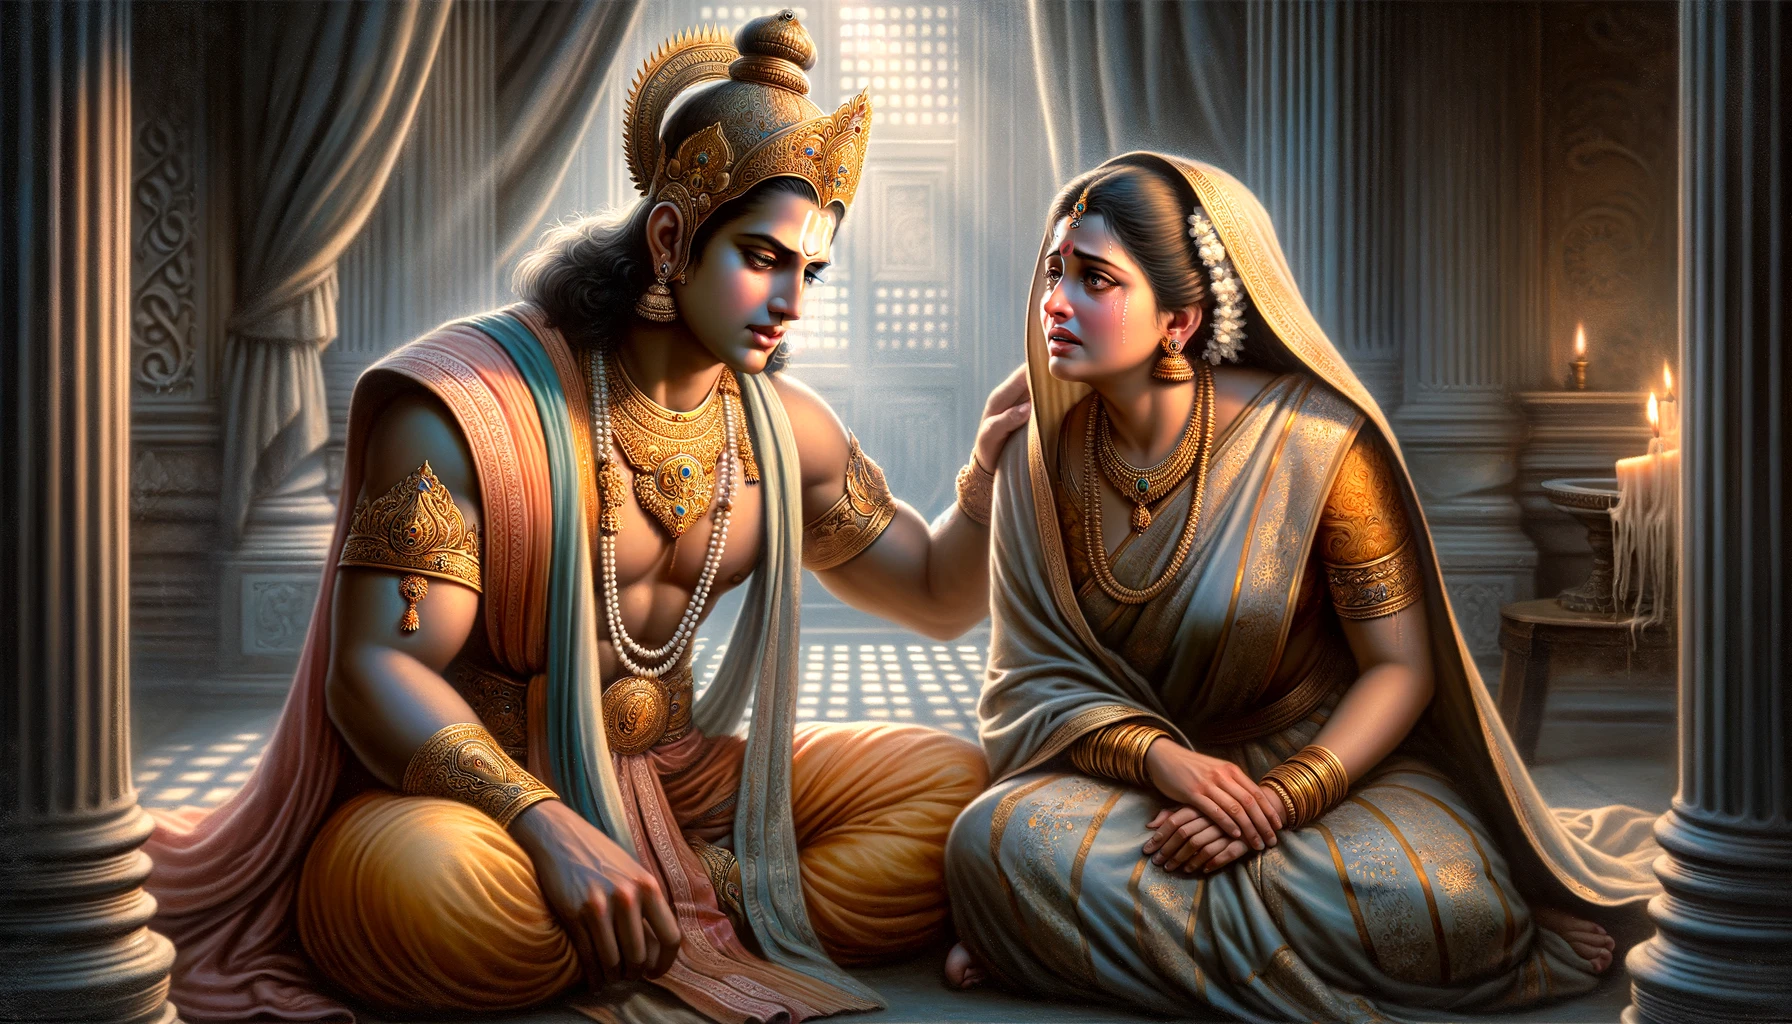 Rama Informs Kausalya of His Exile